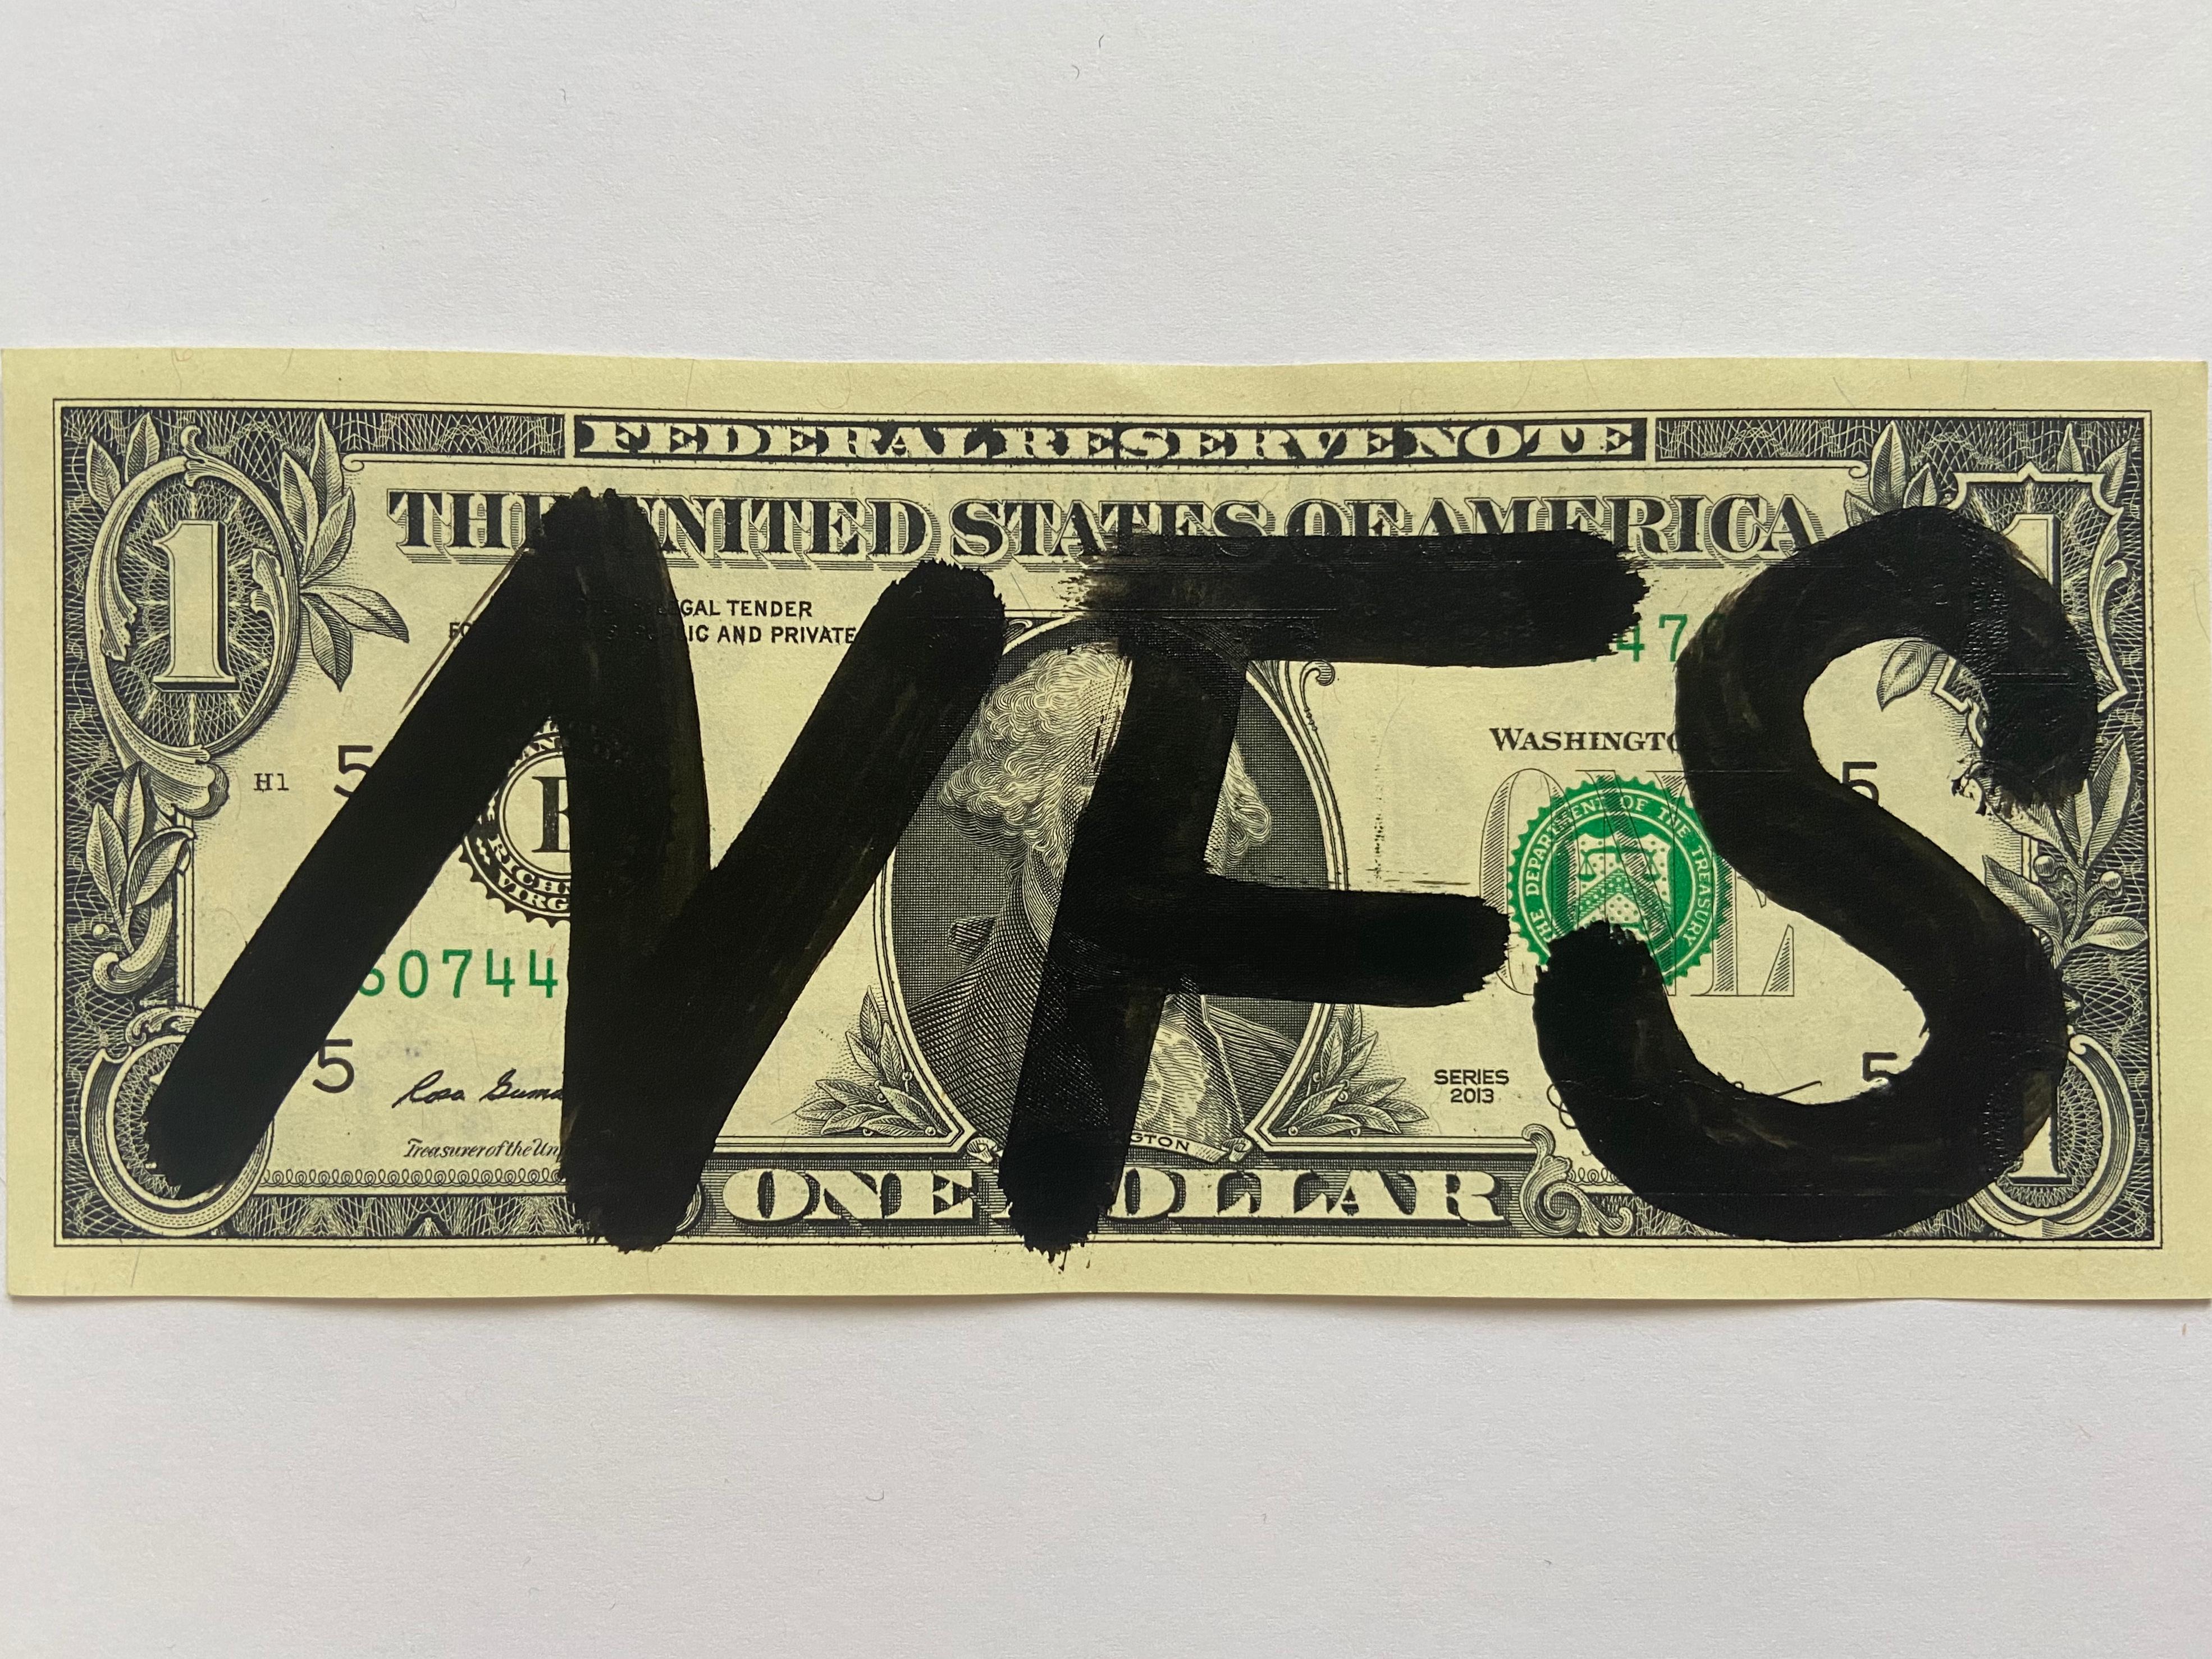 Mort NYC
NFS
2017
Collage de billets de 1 dollar
Signé par l'artiste
Taille : 7 x 15,5 cm
Exemplaire original, livré avec certificat d'authenticité et cachet de l'artiste
Parfait état 
99 euros